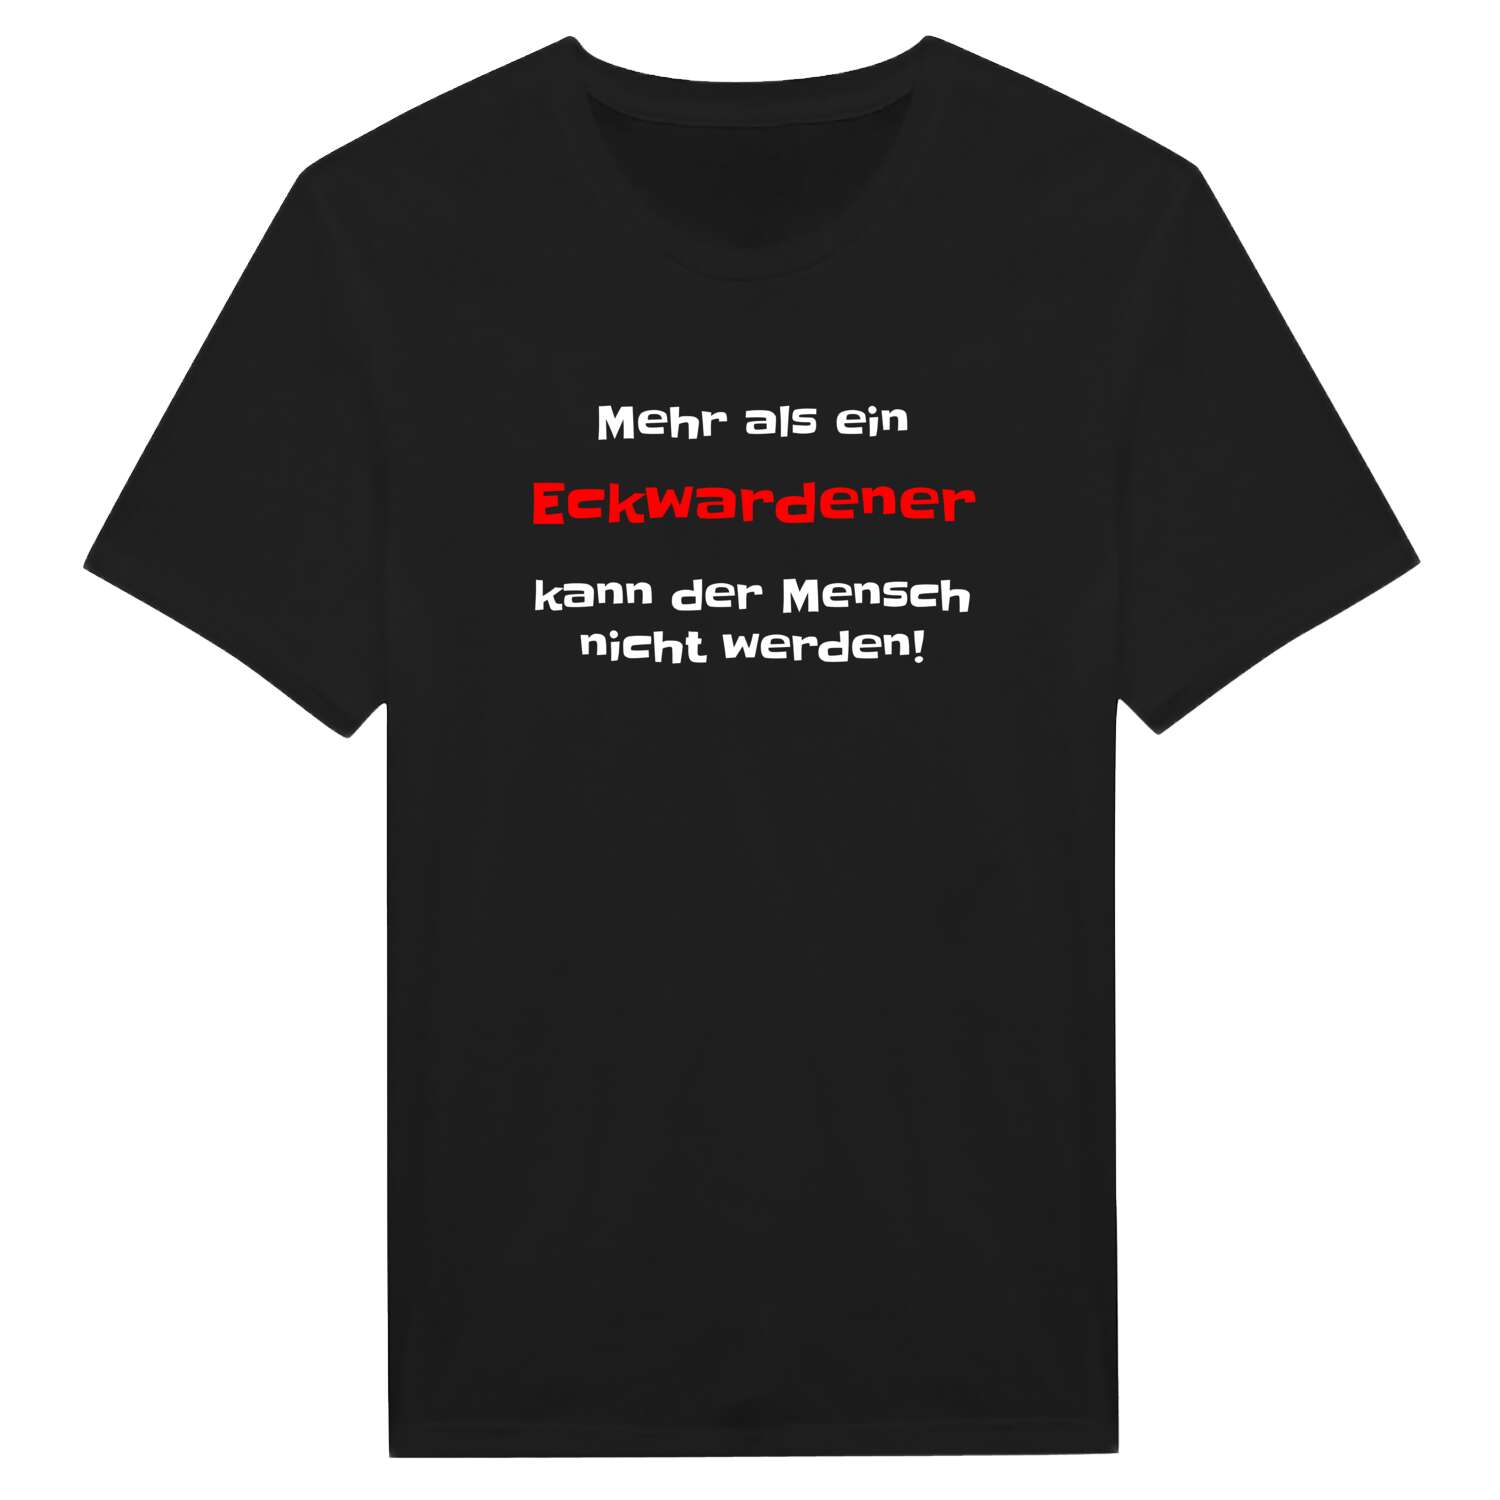 Eckwarden T-Shirt »Mehr als ein«